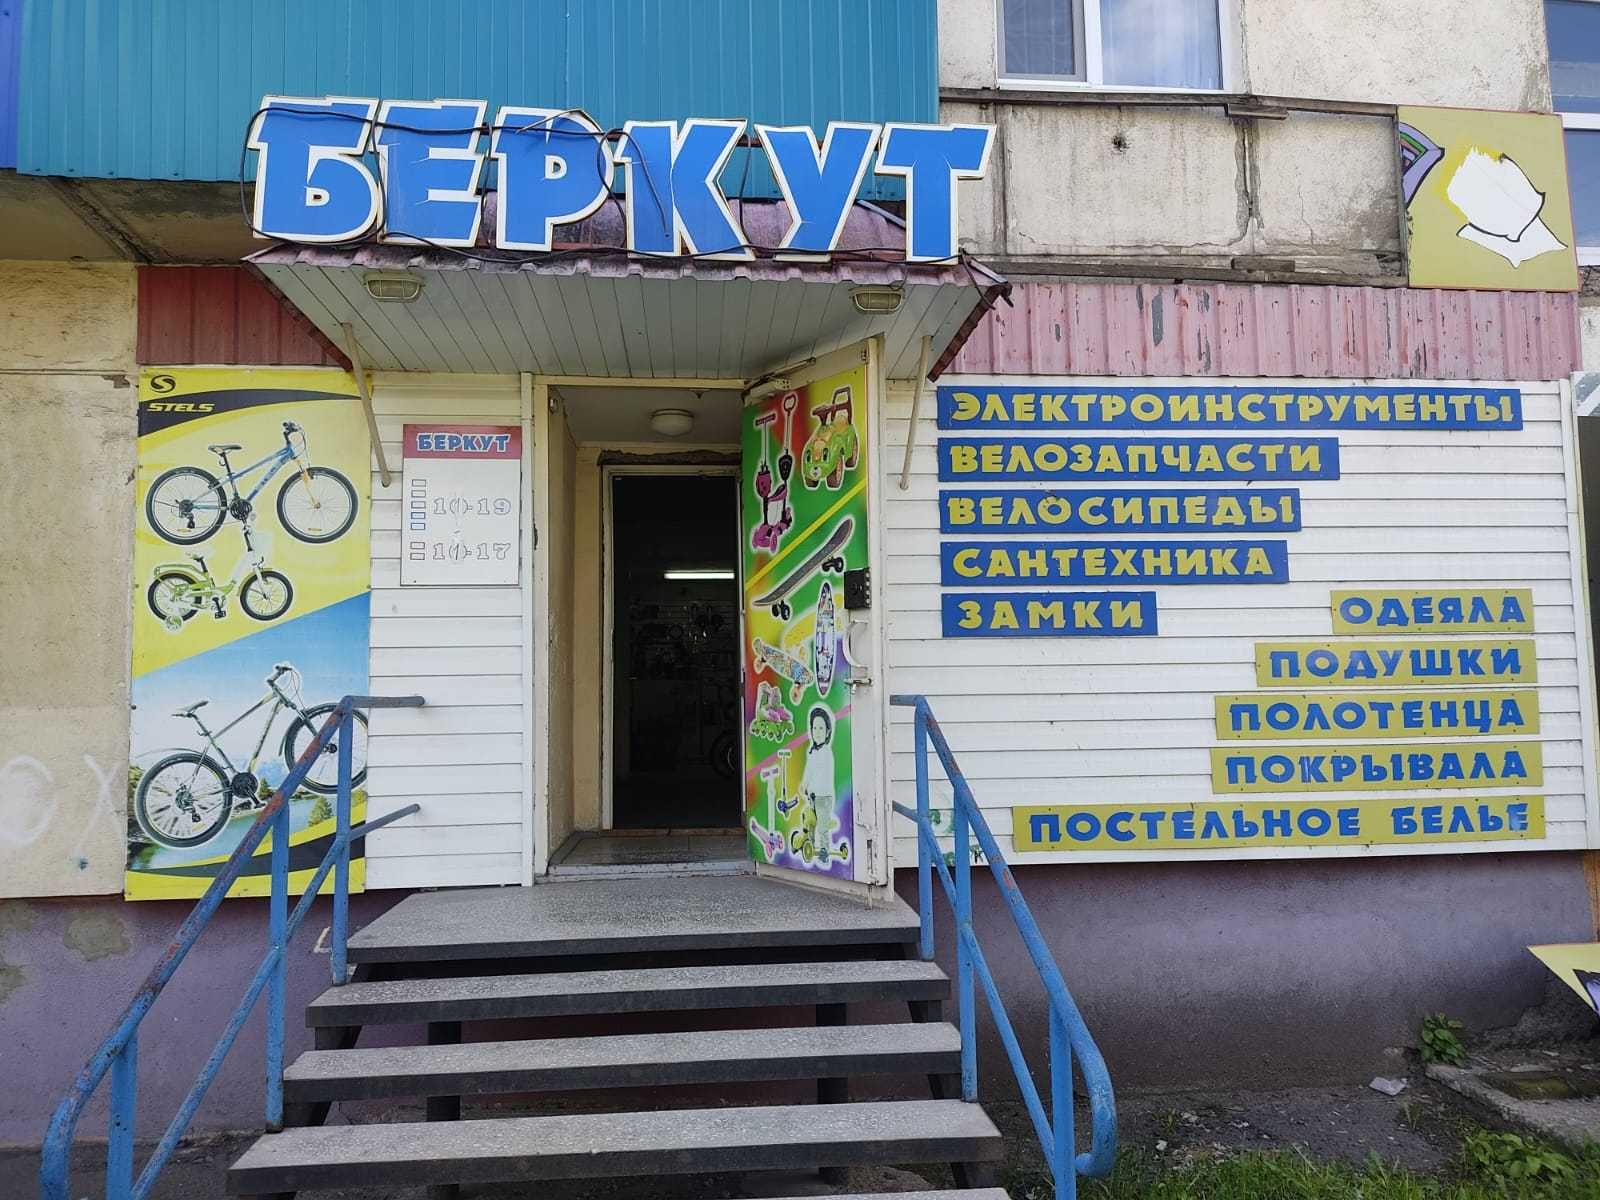 Продажа велосипедов и запчастей магазин "БЕРКУТ"